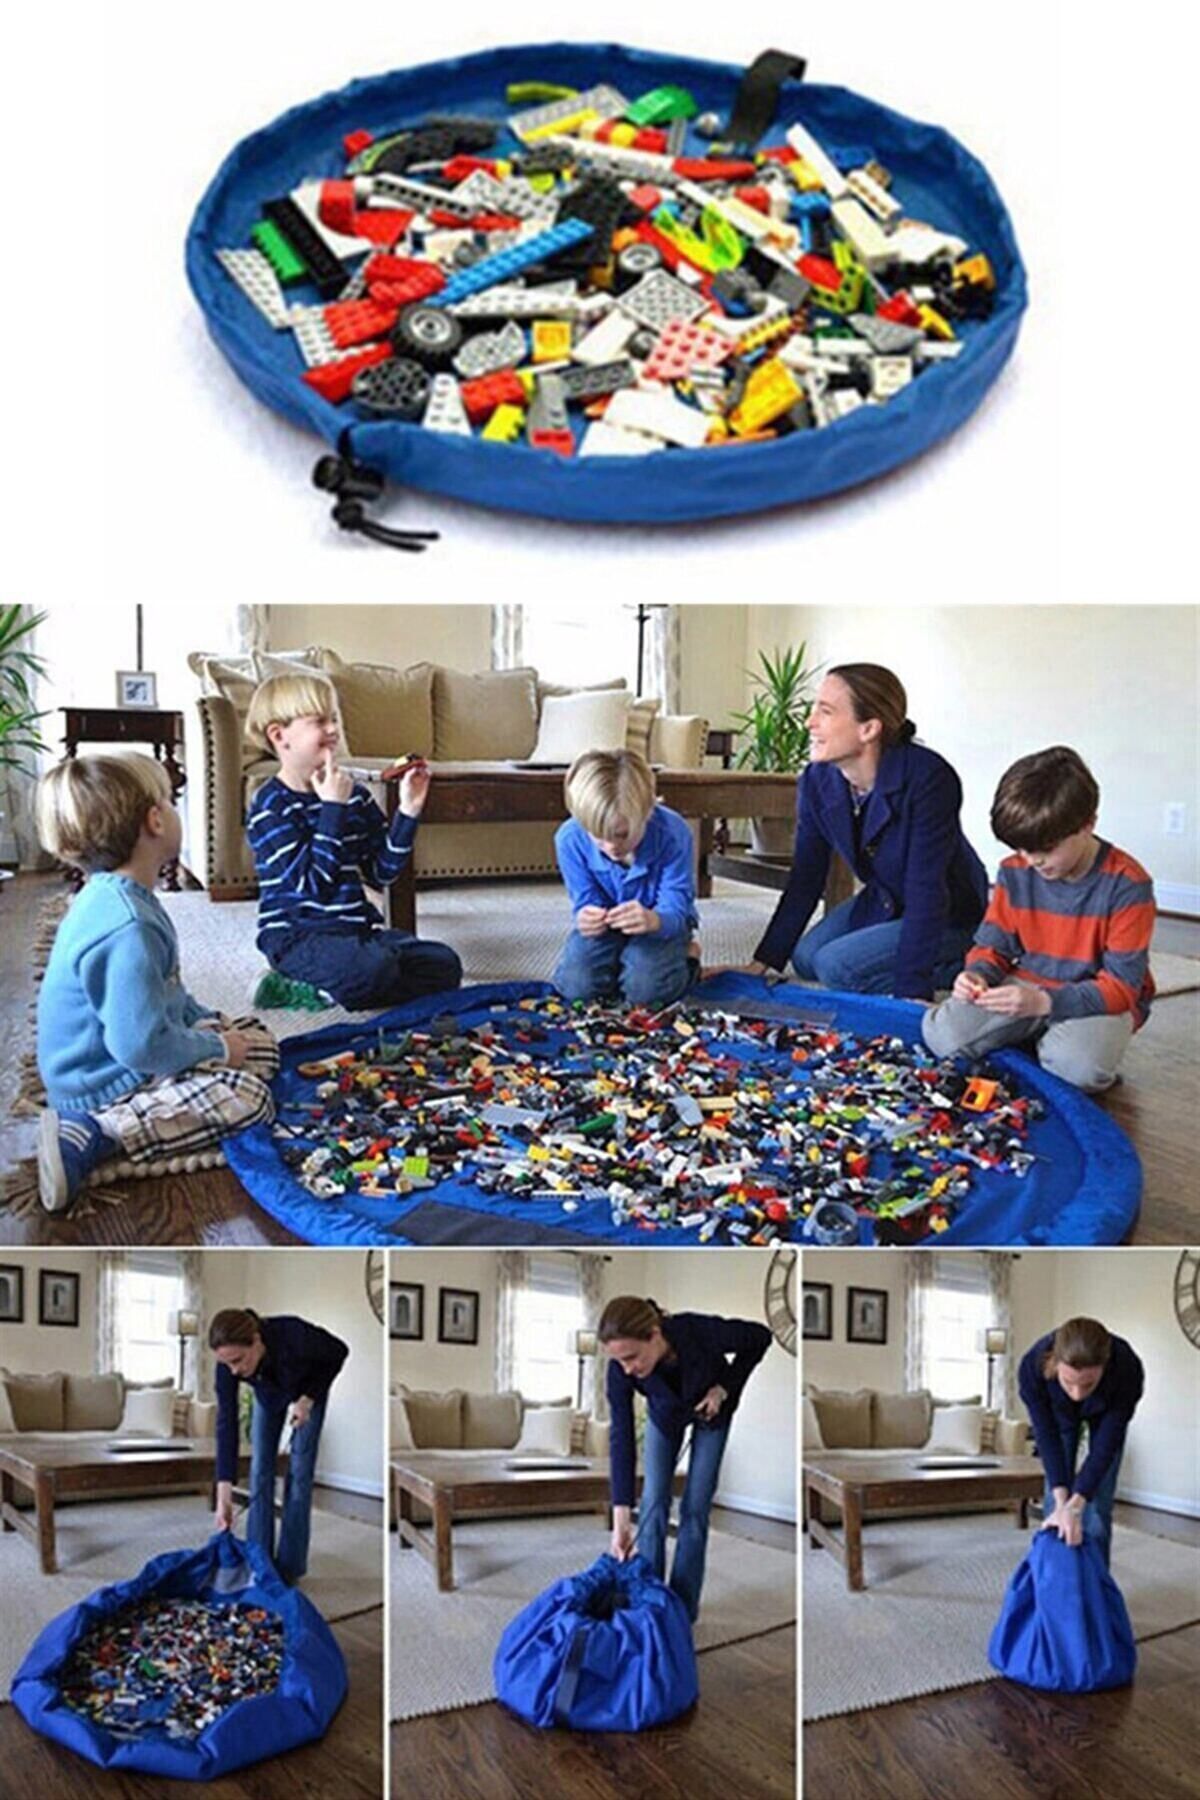 Bundera Çocuk Oyuncak Hurcu Çanta Oyun Halısı Lego Puzzle ve Yapboz Eğitici Oyuncaklar Sepeti Mavi